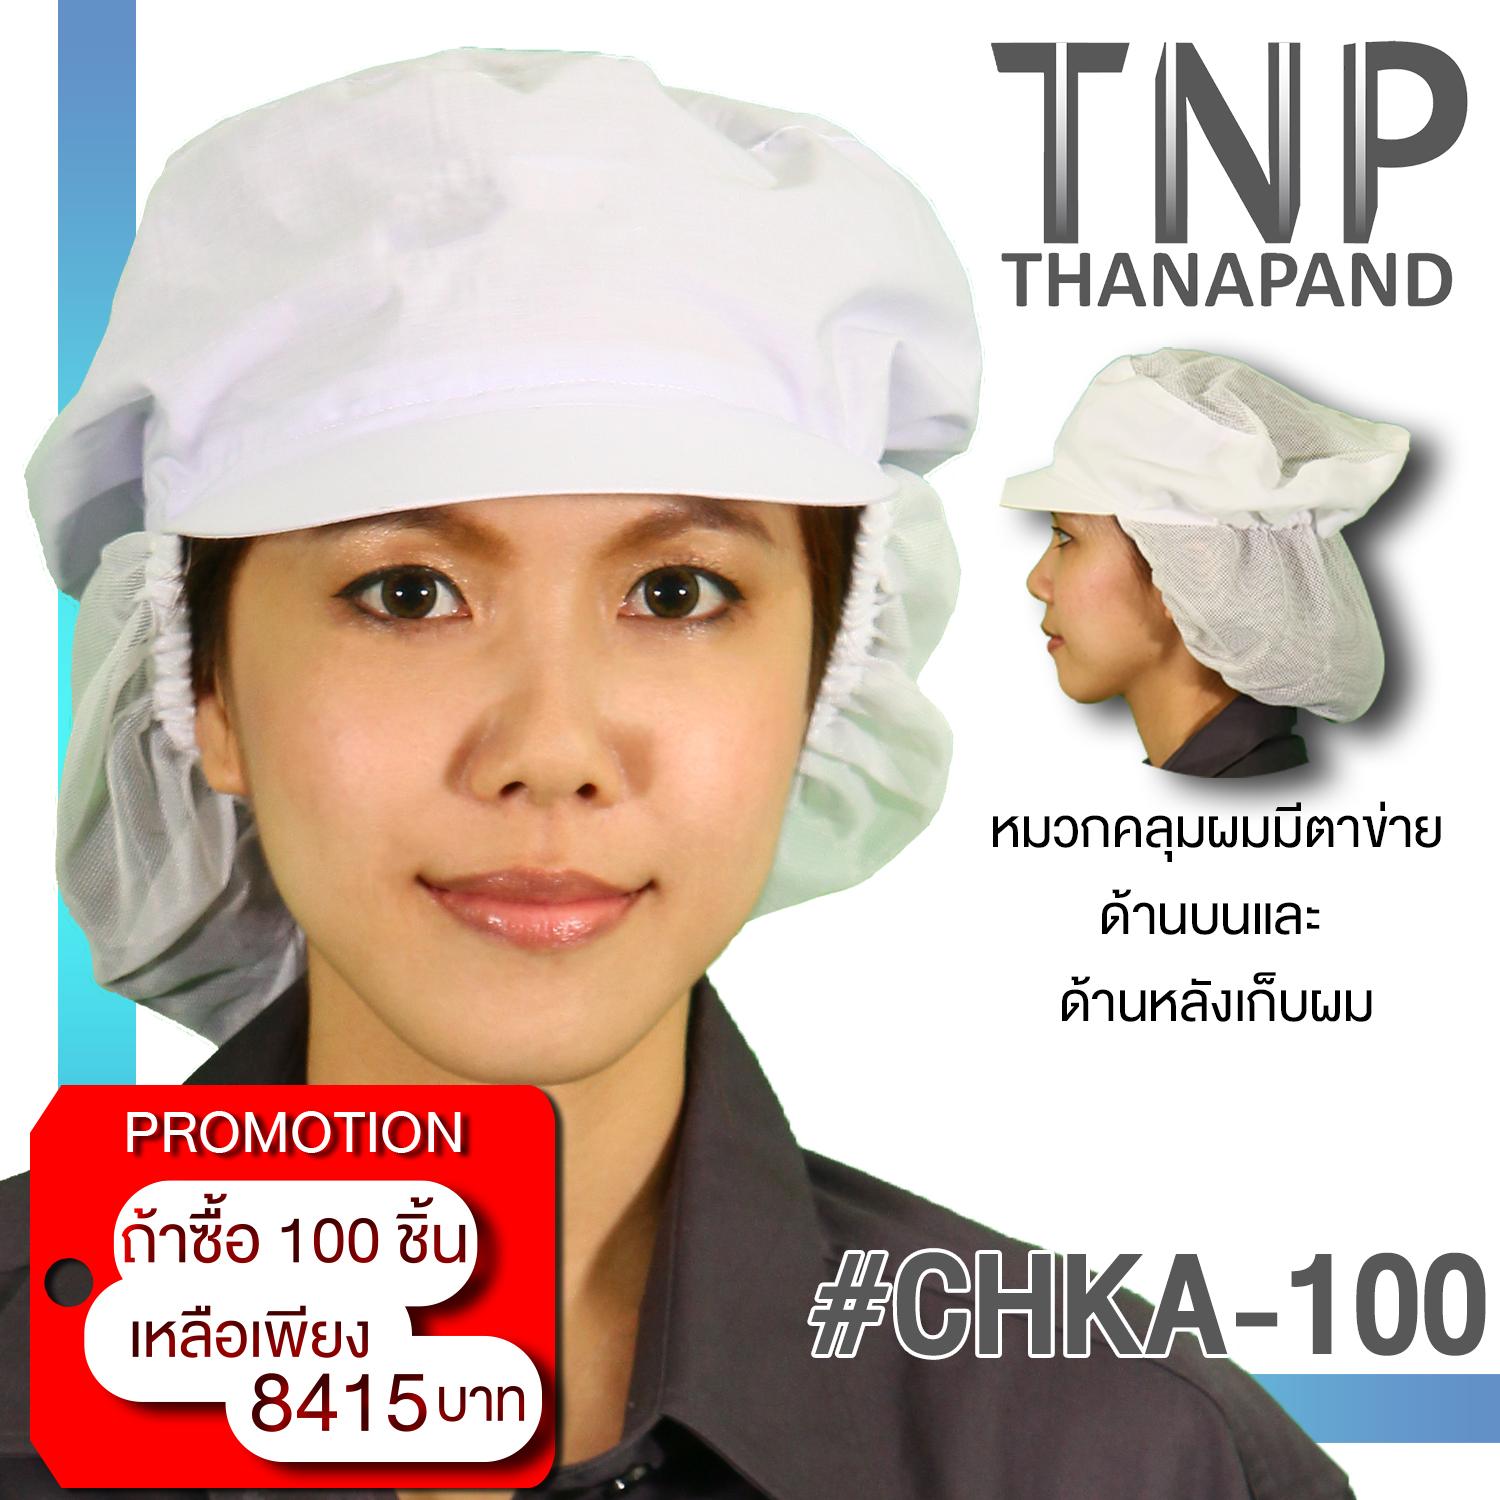 พร้อมส่ง!! หมวกคลุมผม หมวกอุตสาหกรรม หมวกคลีนรูม  หมวกโรงงาน หมวกตาข่าย แบบแก๊ปมีเน็ตเก็บผมด้านหลัง รหัส# CHKA   Thanapand